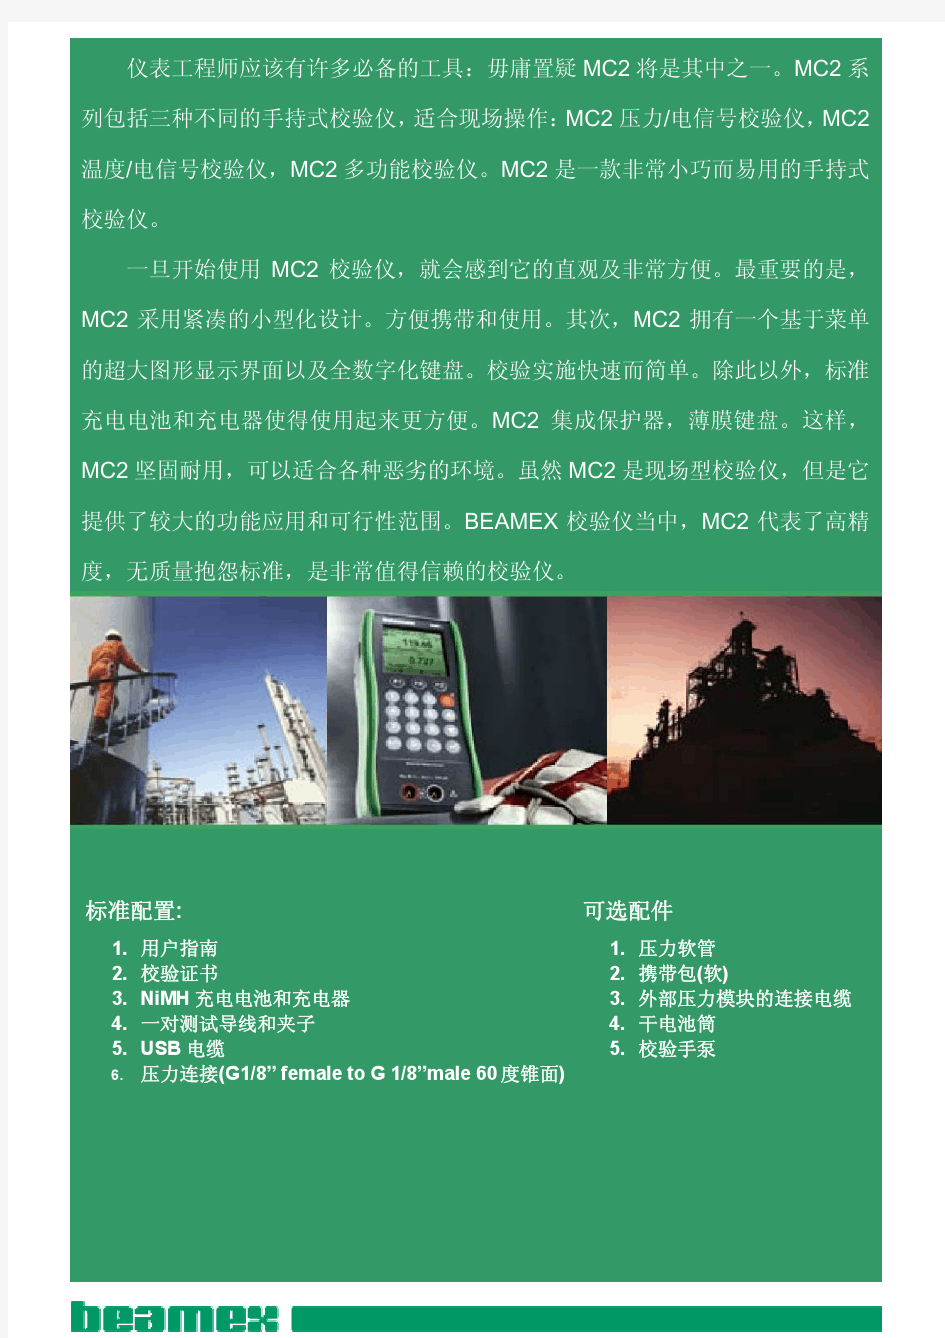 BEAMEX MC2(压力、过程信号校验仪)全系列产品选型资料-中文